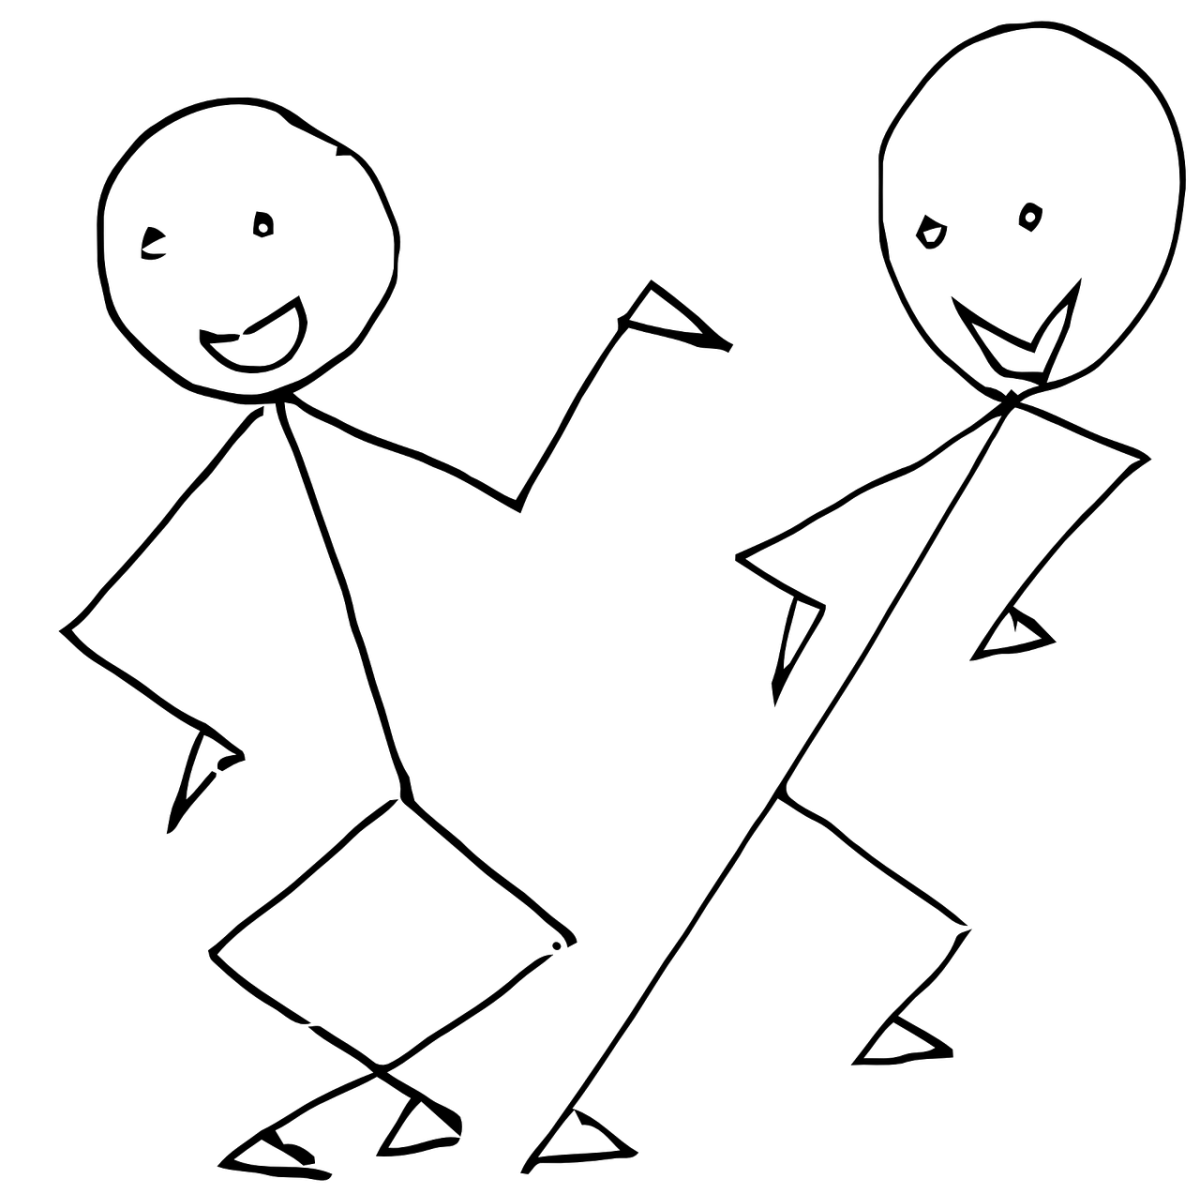 Нарисуй человечка 2. Нарисованный человечек. Танцующие человечки. Забавные человечки картинки. Схематичные человечки.